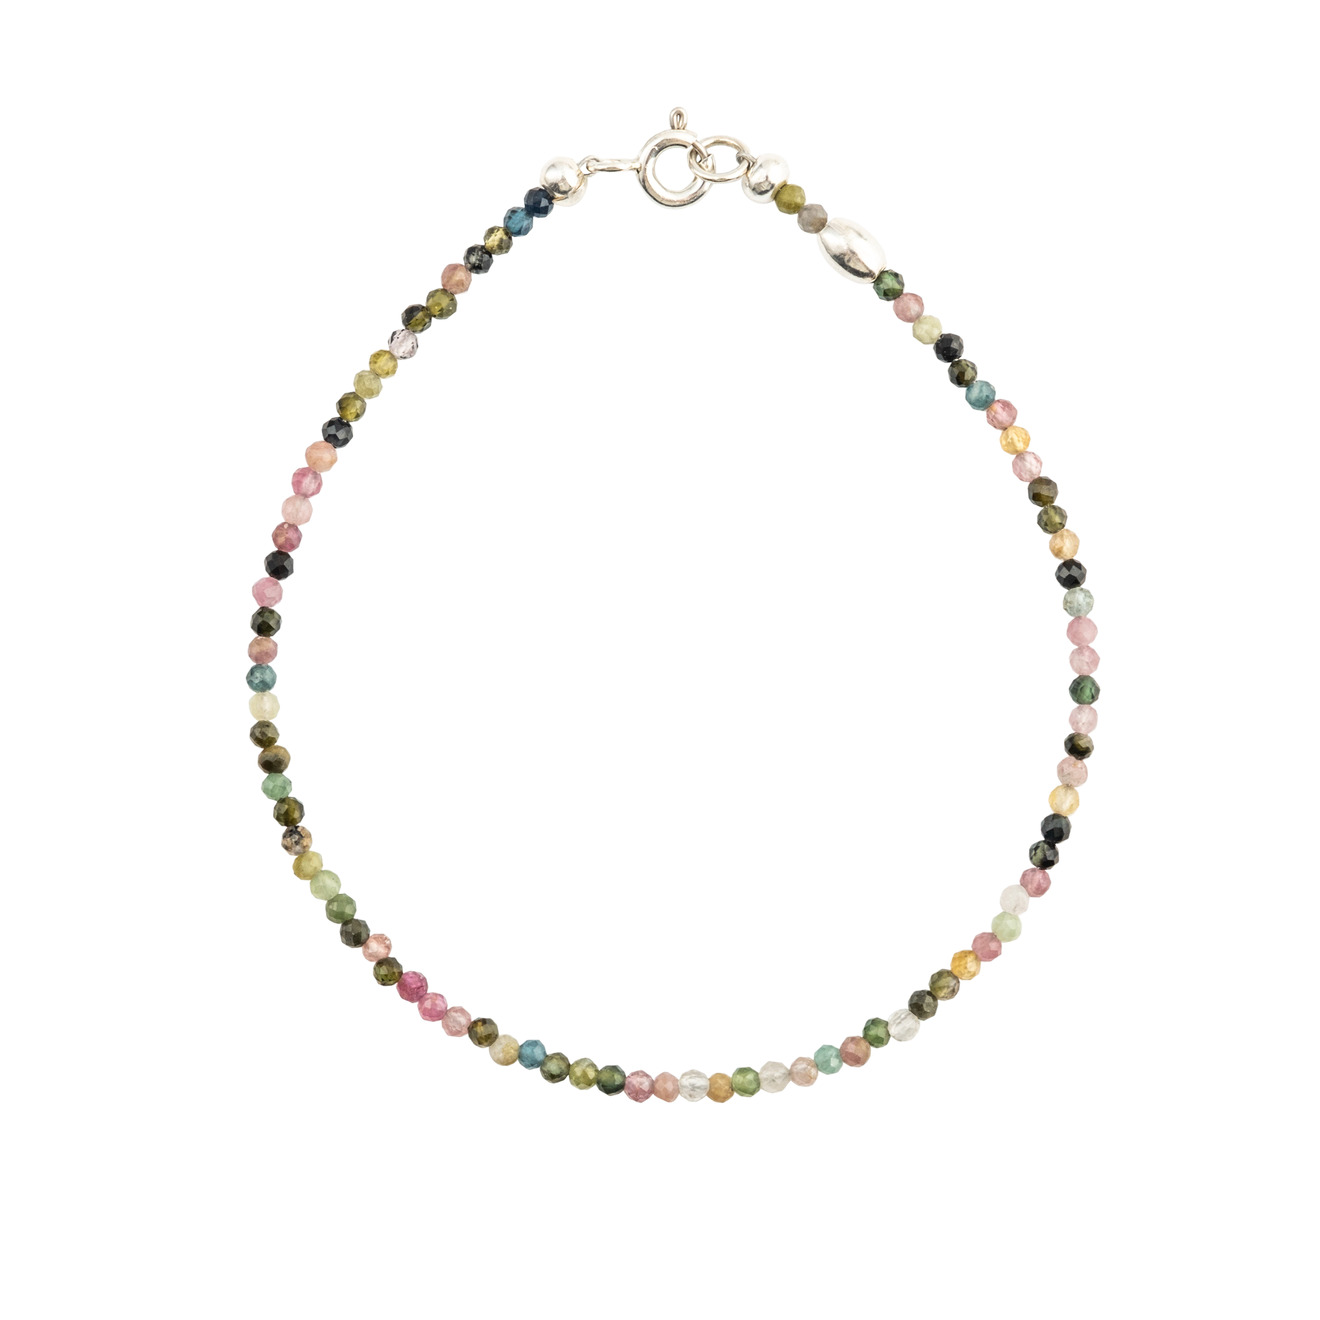 Agnes Waterhouse Браслет из разноцветного турмалина и серебра